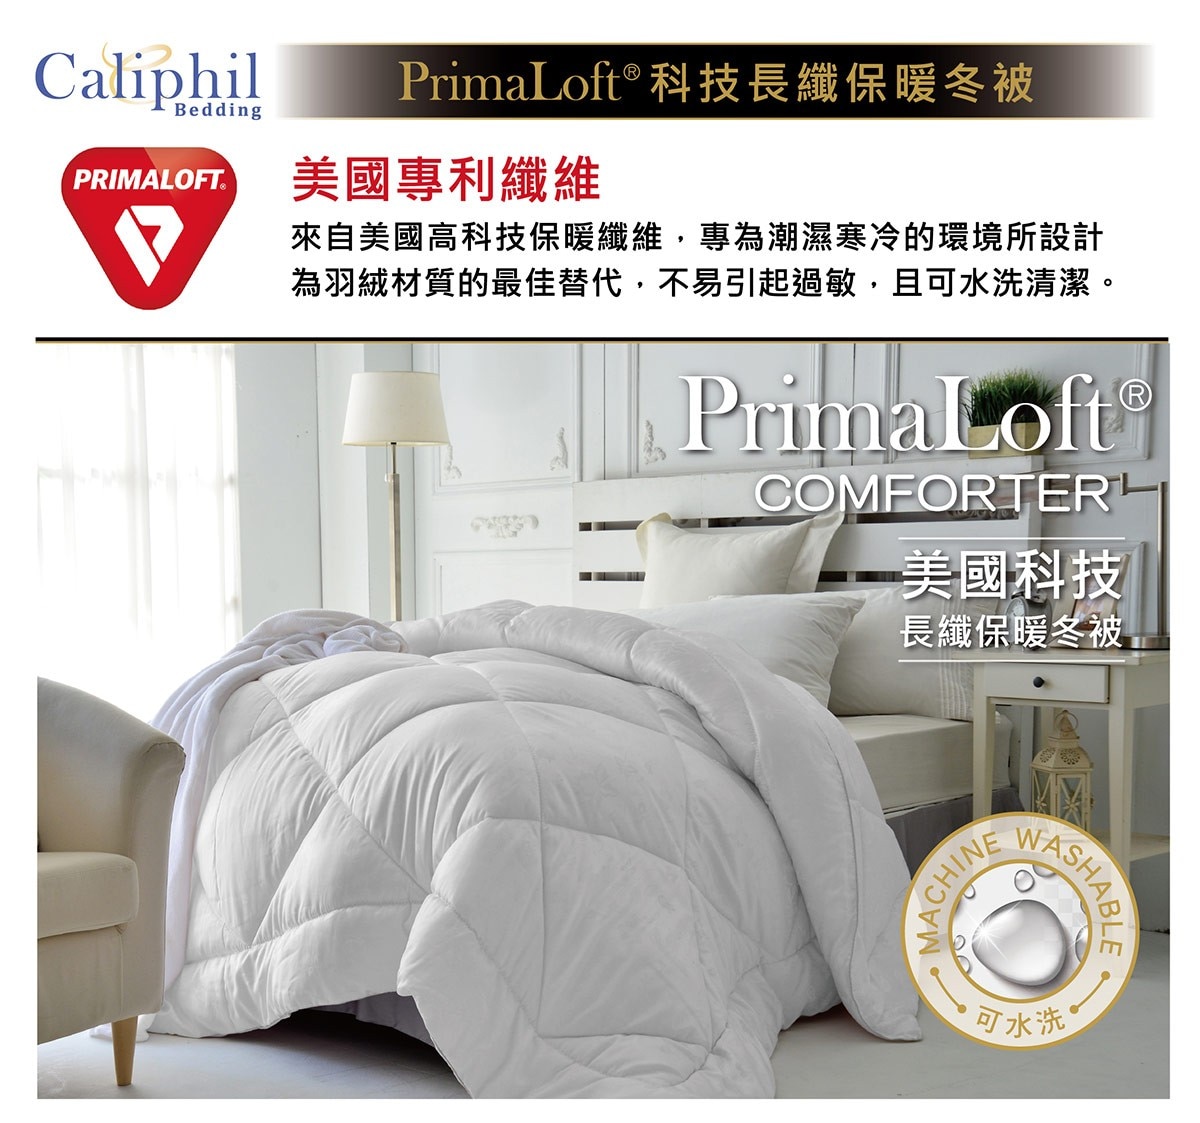 Caliphil PrimaLoft® 單人科技長纖保暖冬被 150 x 210 公分